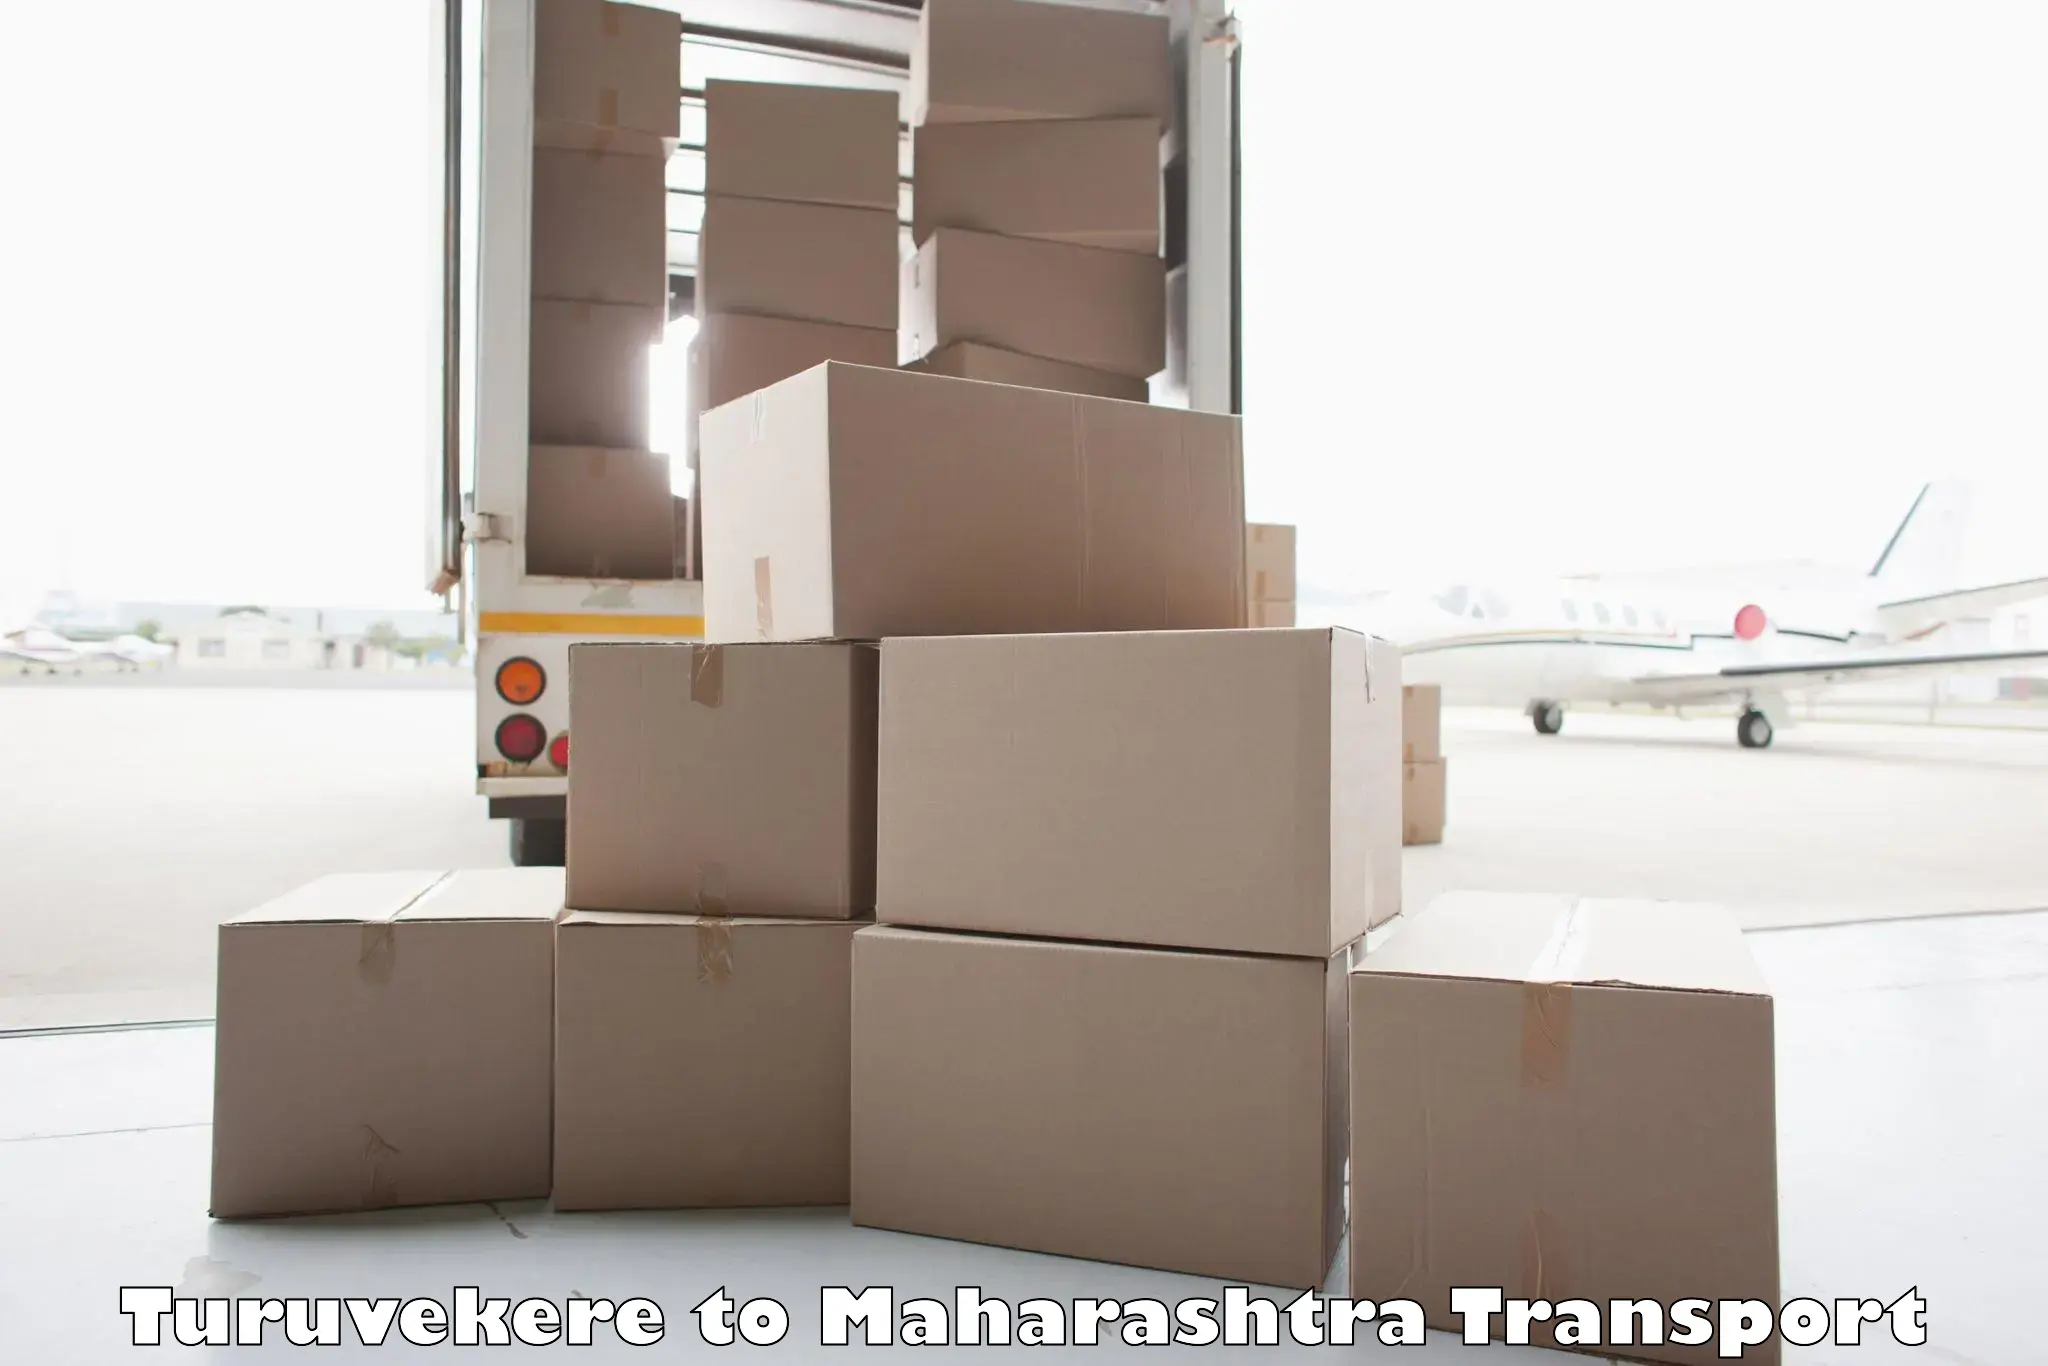 Nearest transport service Turuvekere to Aurangabad